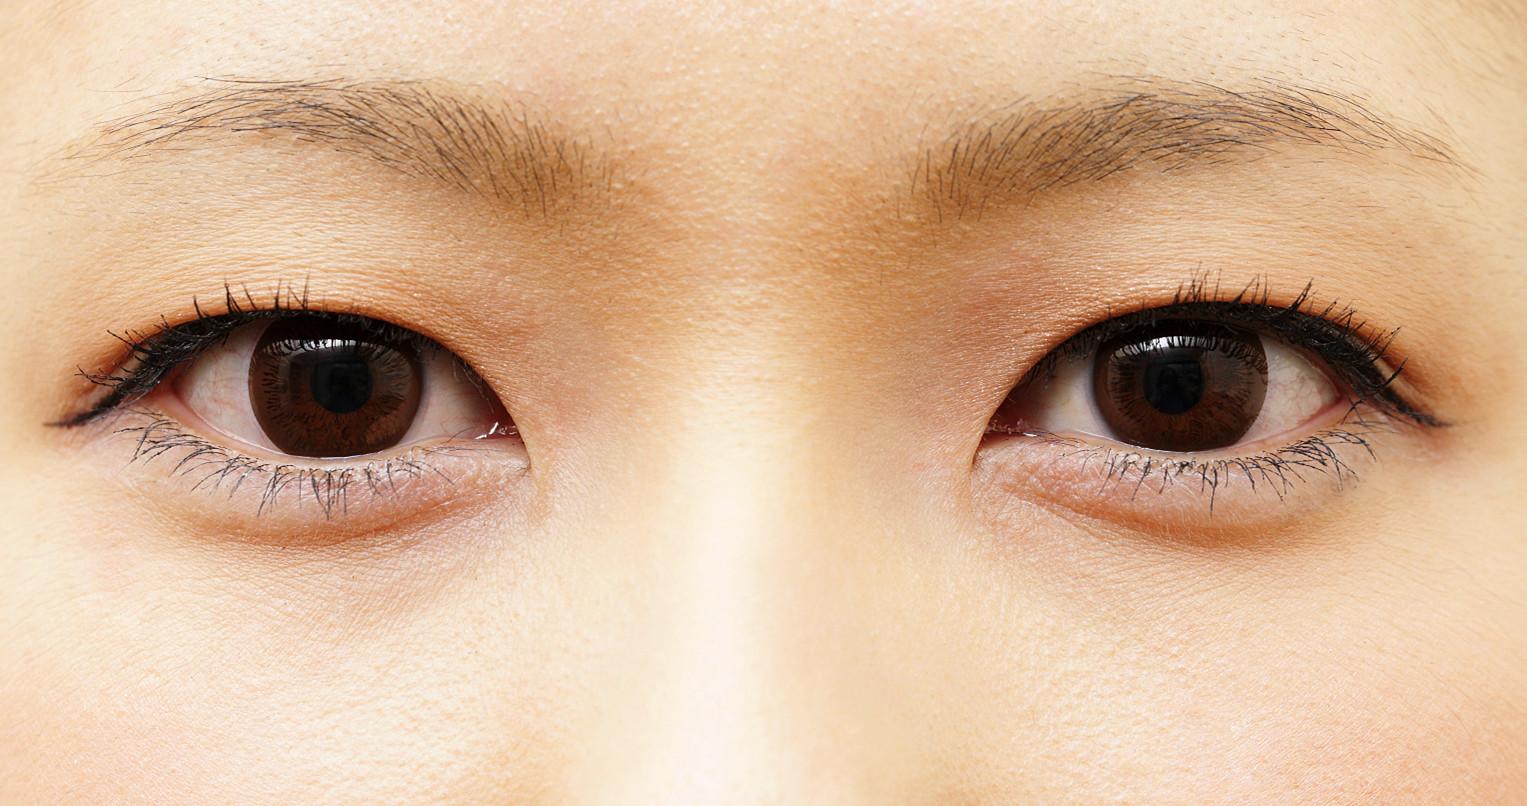 【分享】日本 抽脂埋线双眼皮(超肿单眼皮) - 知乎